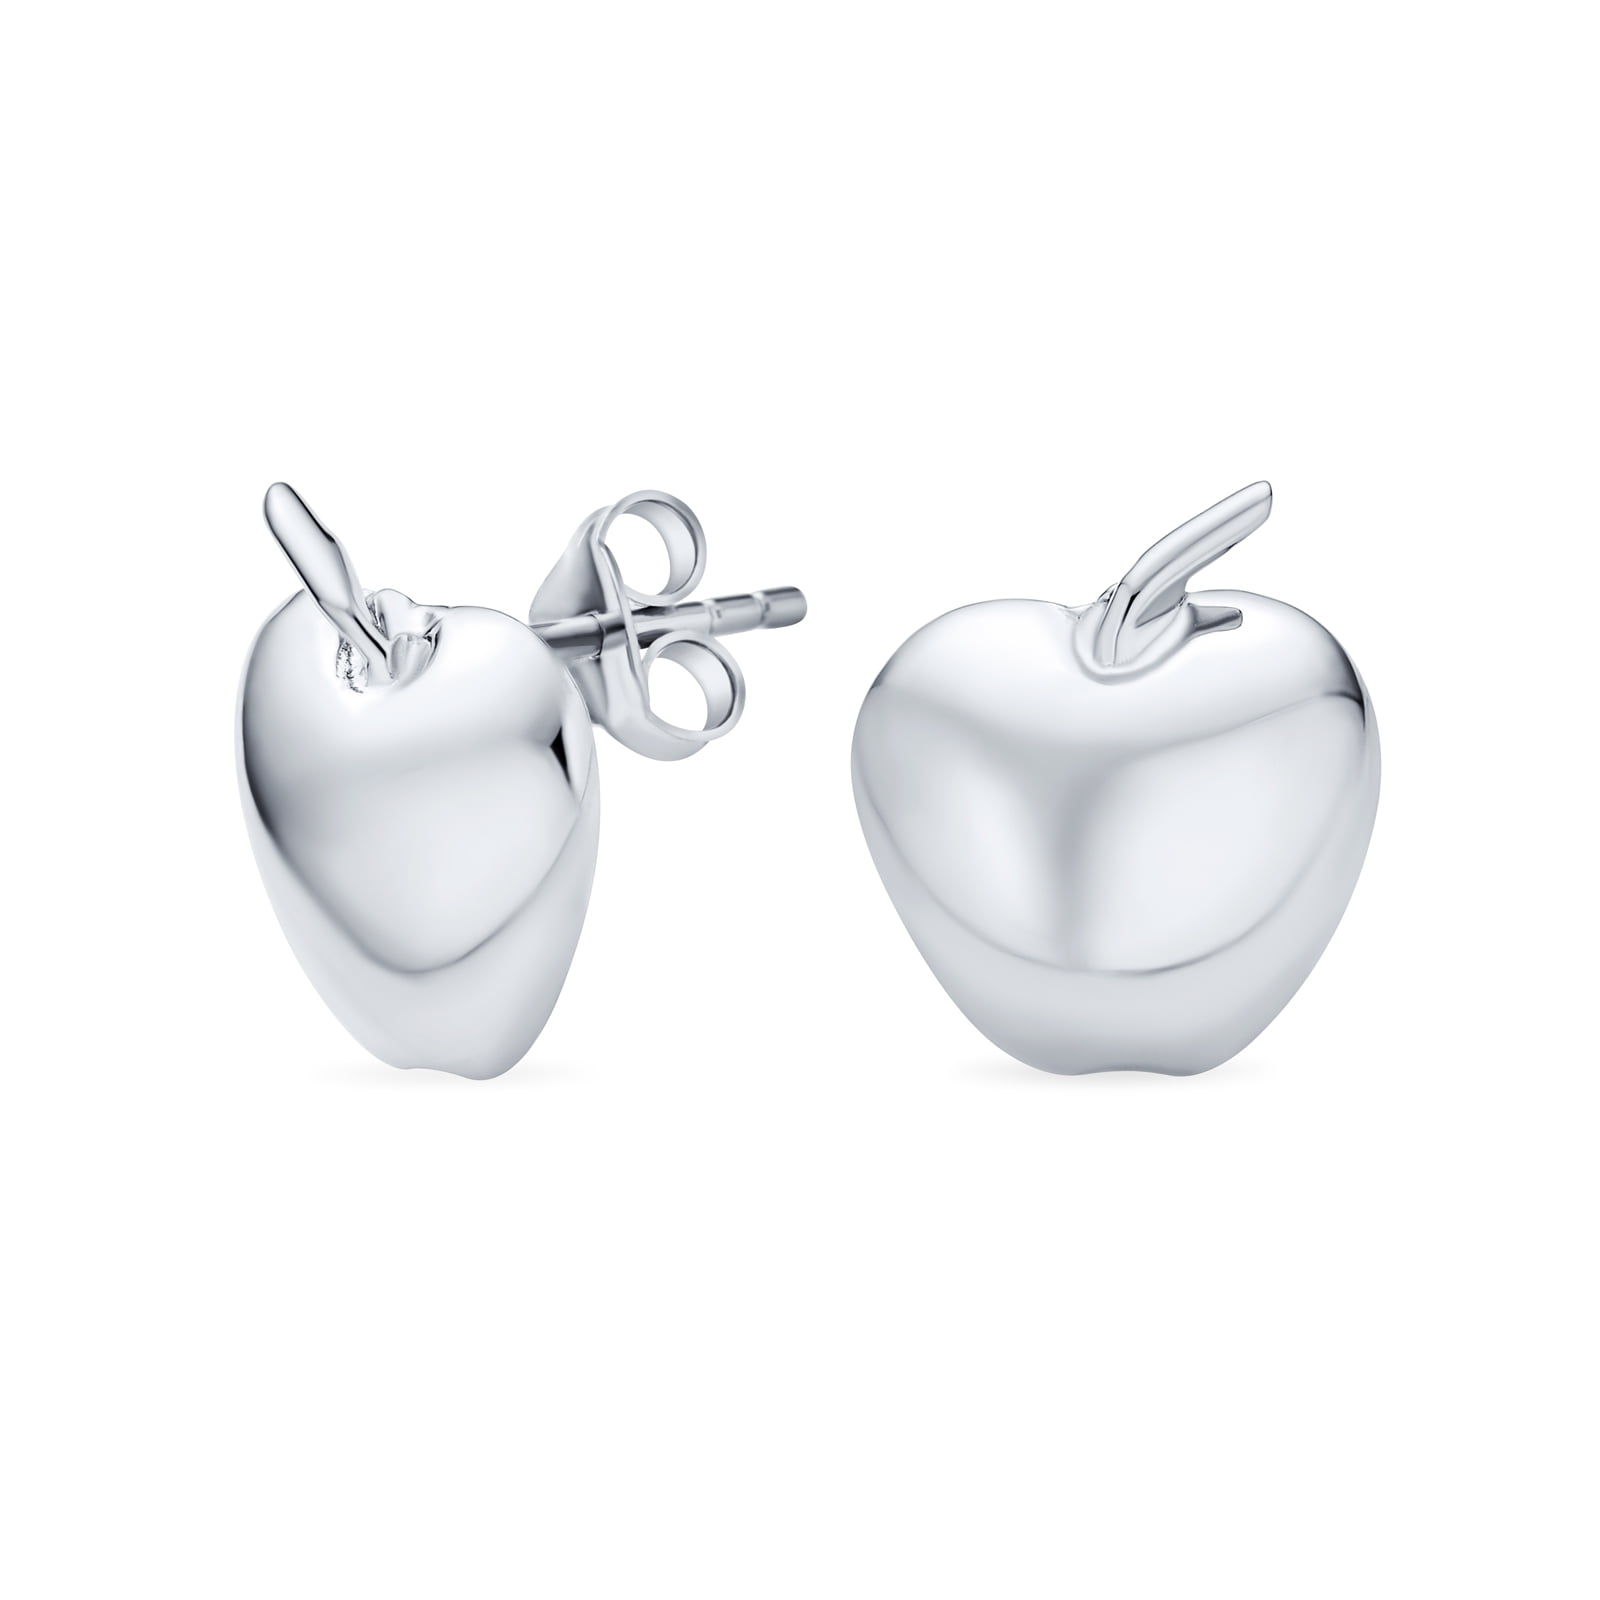 Apple Earrings; Brand New Silver Fashion Jewelry Earrings 